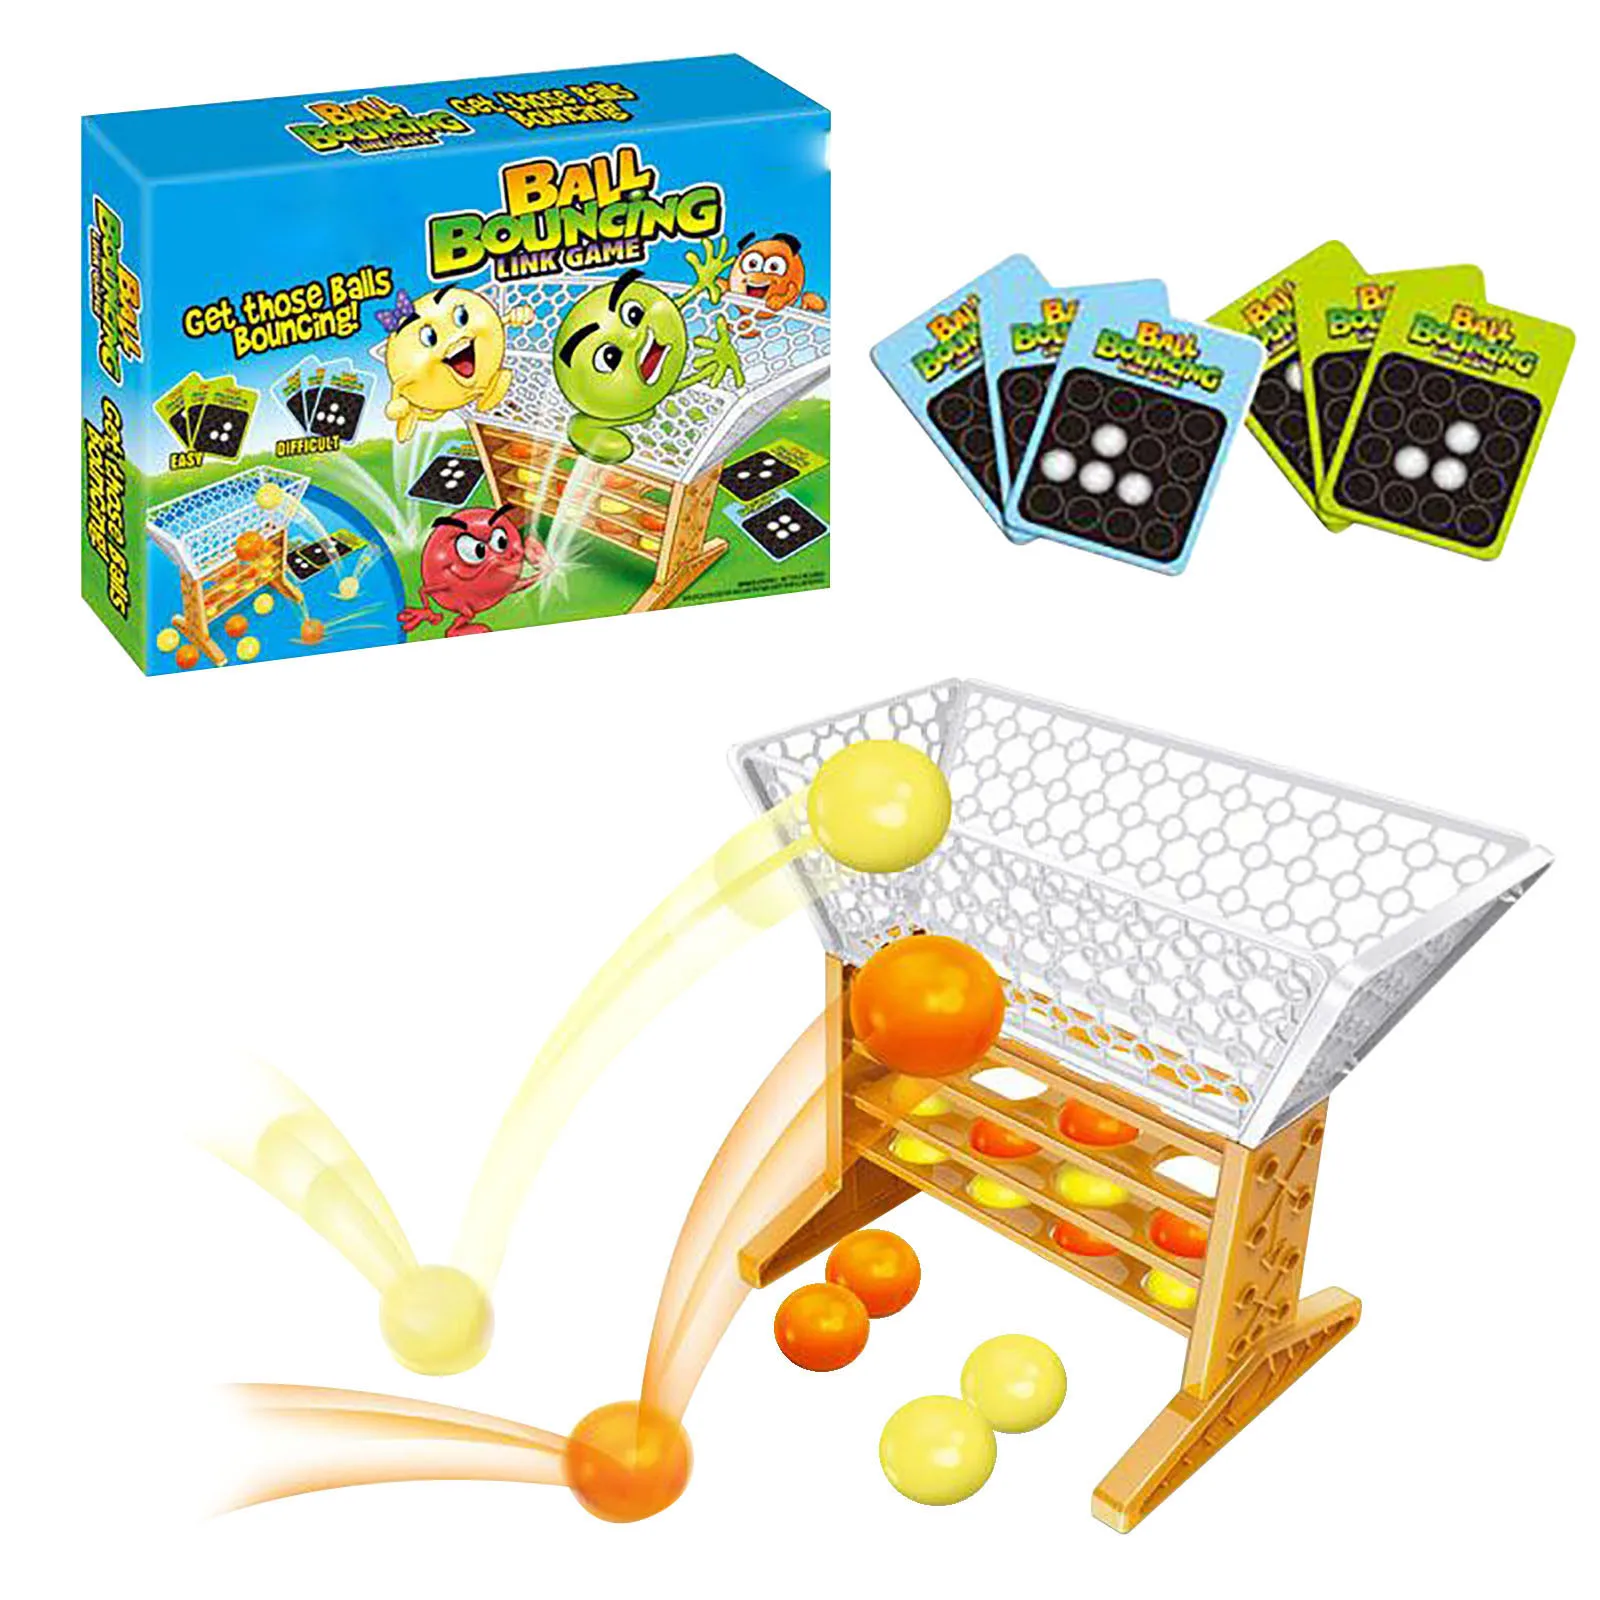 

Смешной похлопывающий мяч Интерактивная настольная игра для родителей и детей детские развивающие игрушки антистрессовый мяч подарок на д...